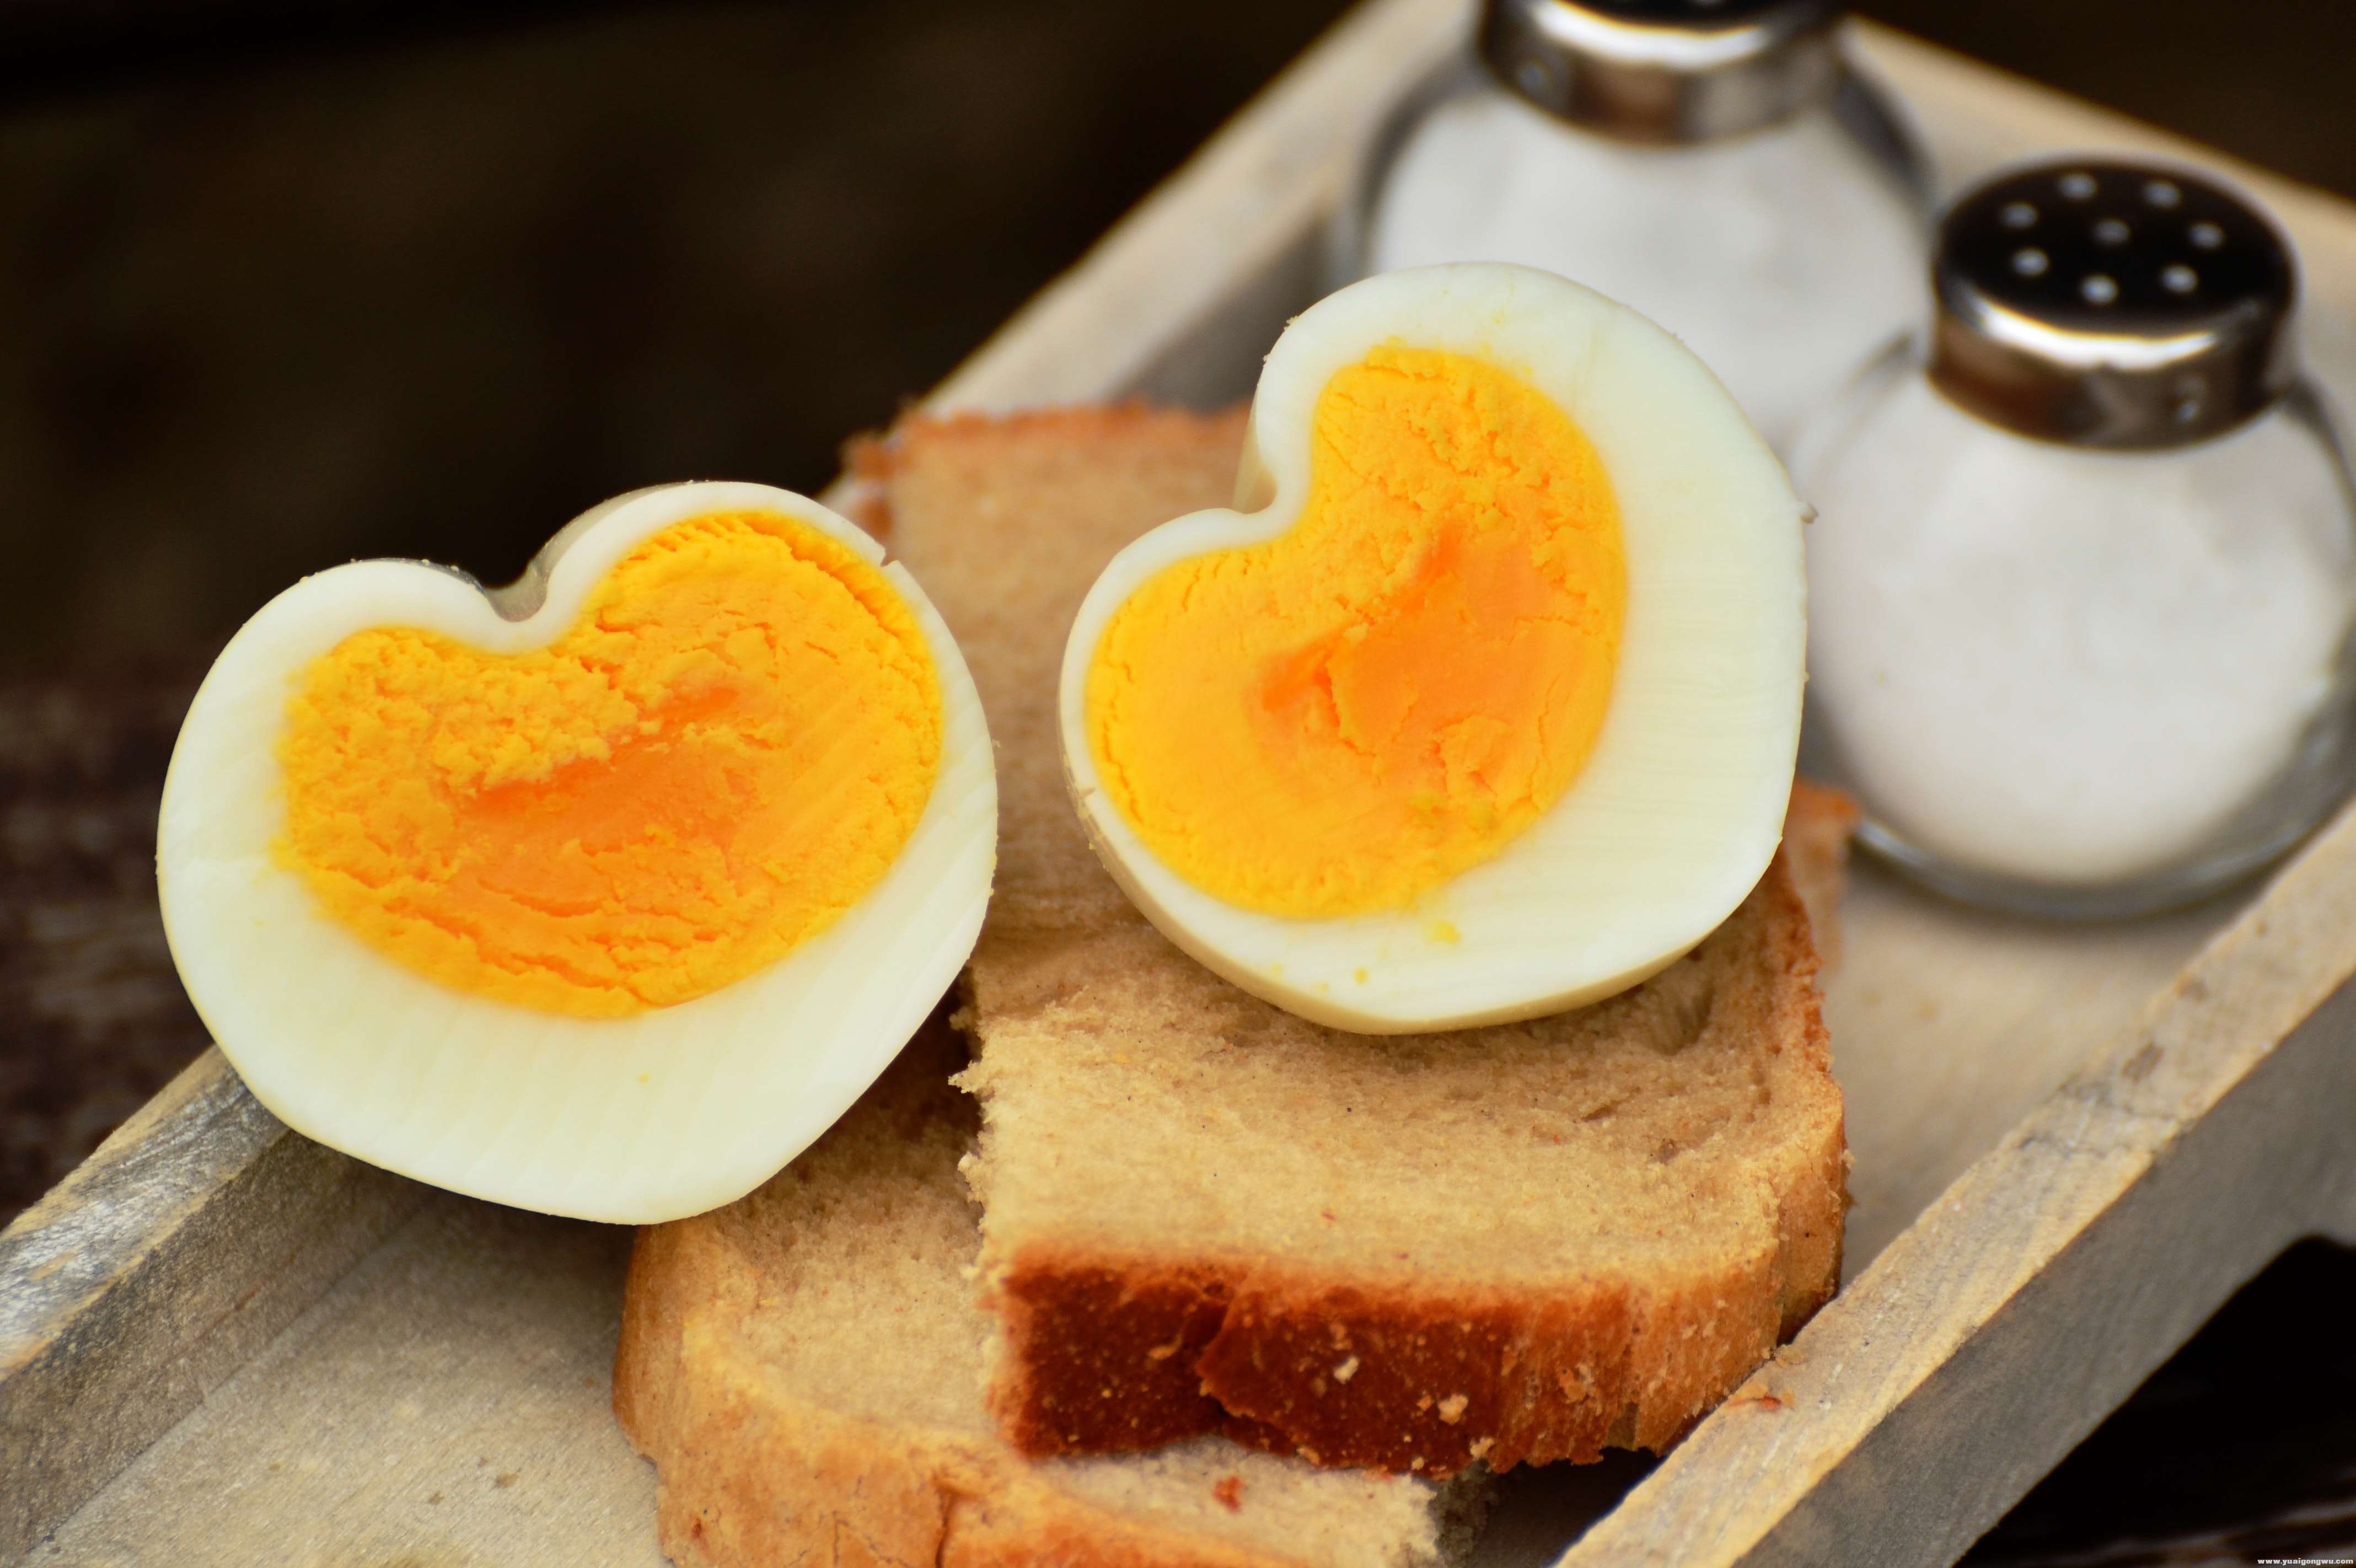 boiled-egg-bread-egg-160850.jpg